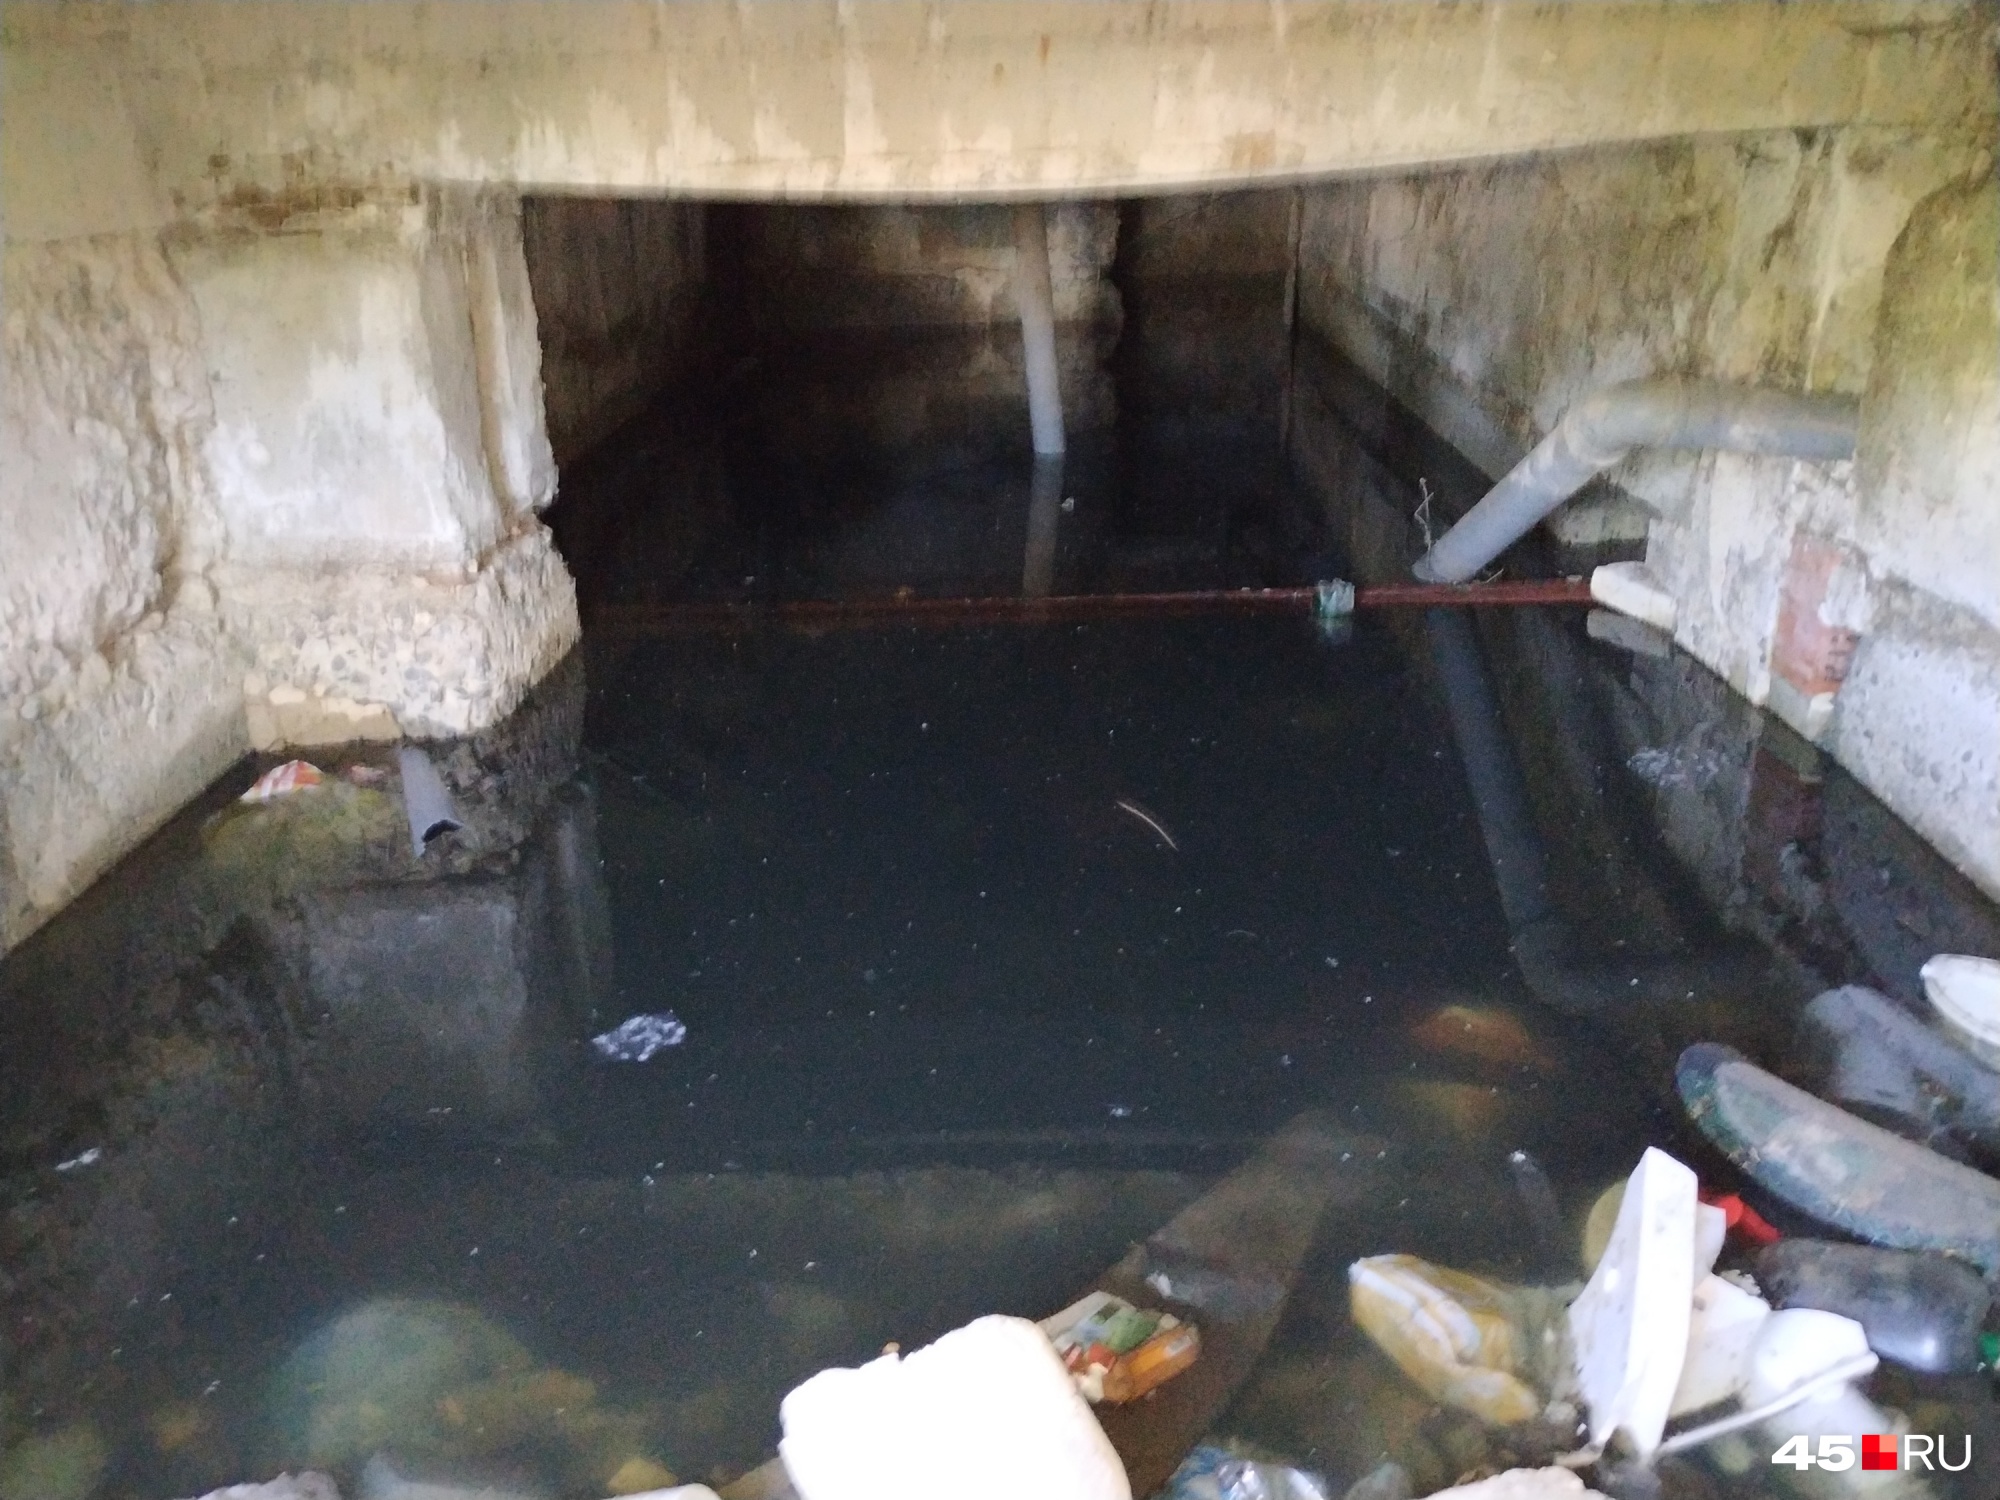 Вода в подвале стоит, по словам жителей, уже несколько месяцев